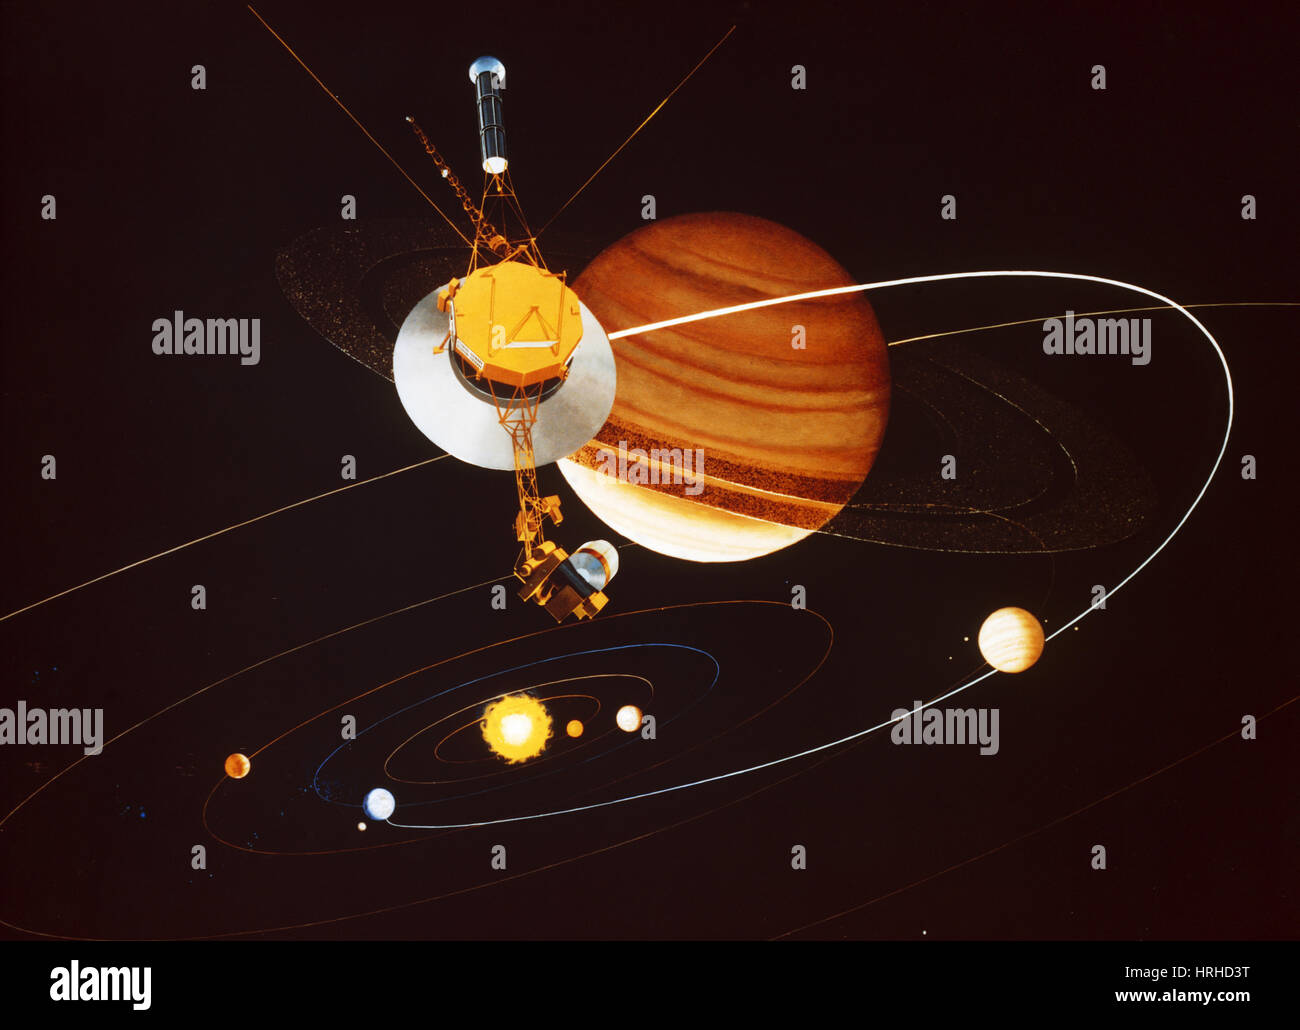 Ilustración de sobrevuelo de Saturno Voyager Foto de stock